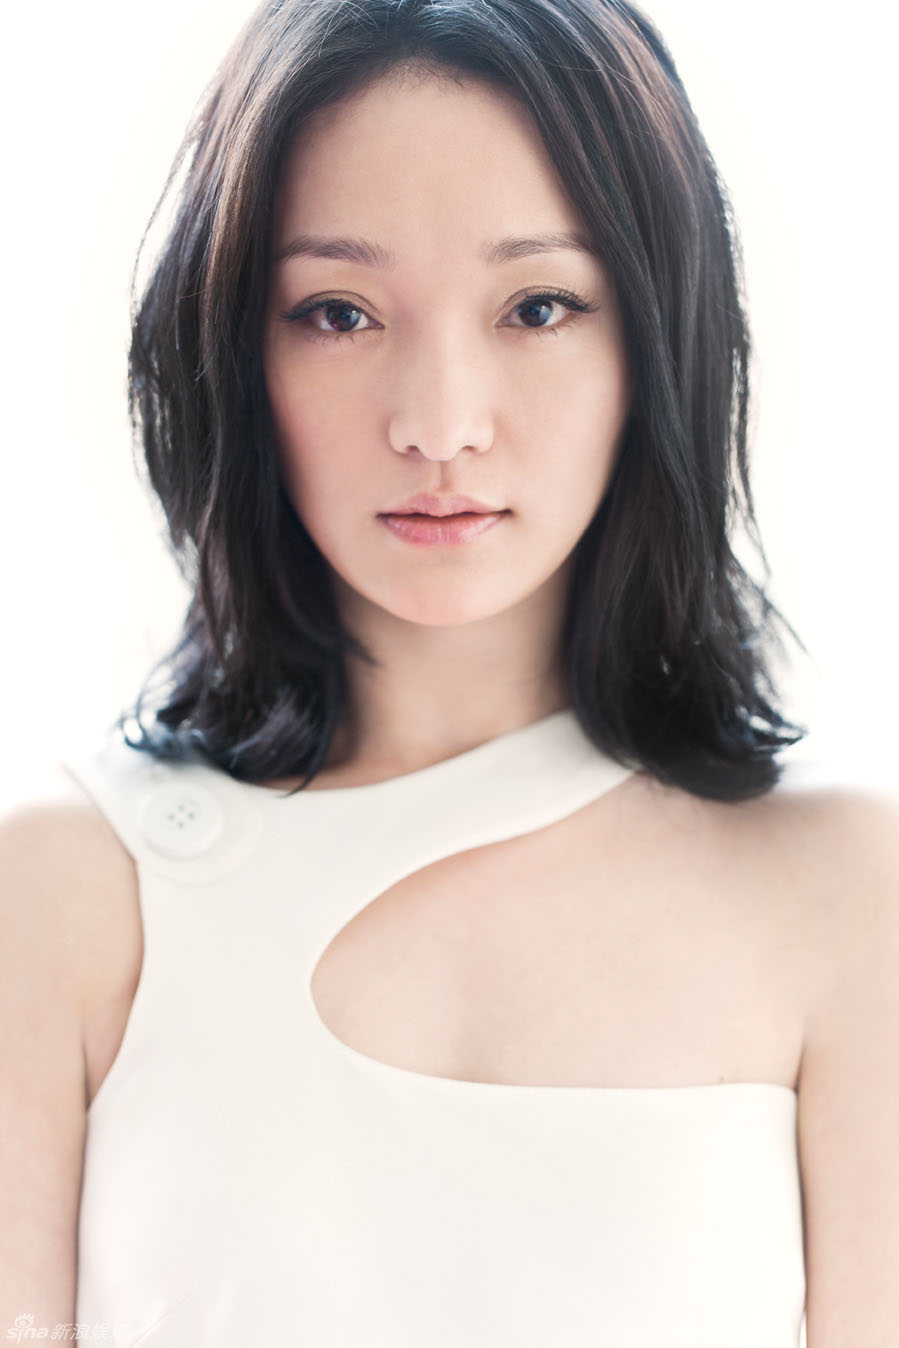 الممثلة تشوشون من البر الرئيسي الصيني